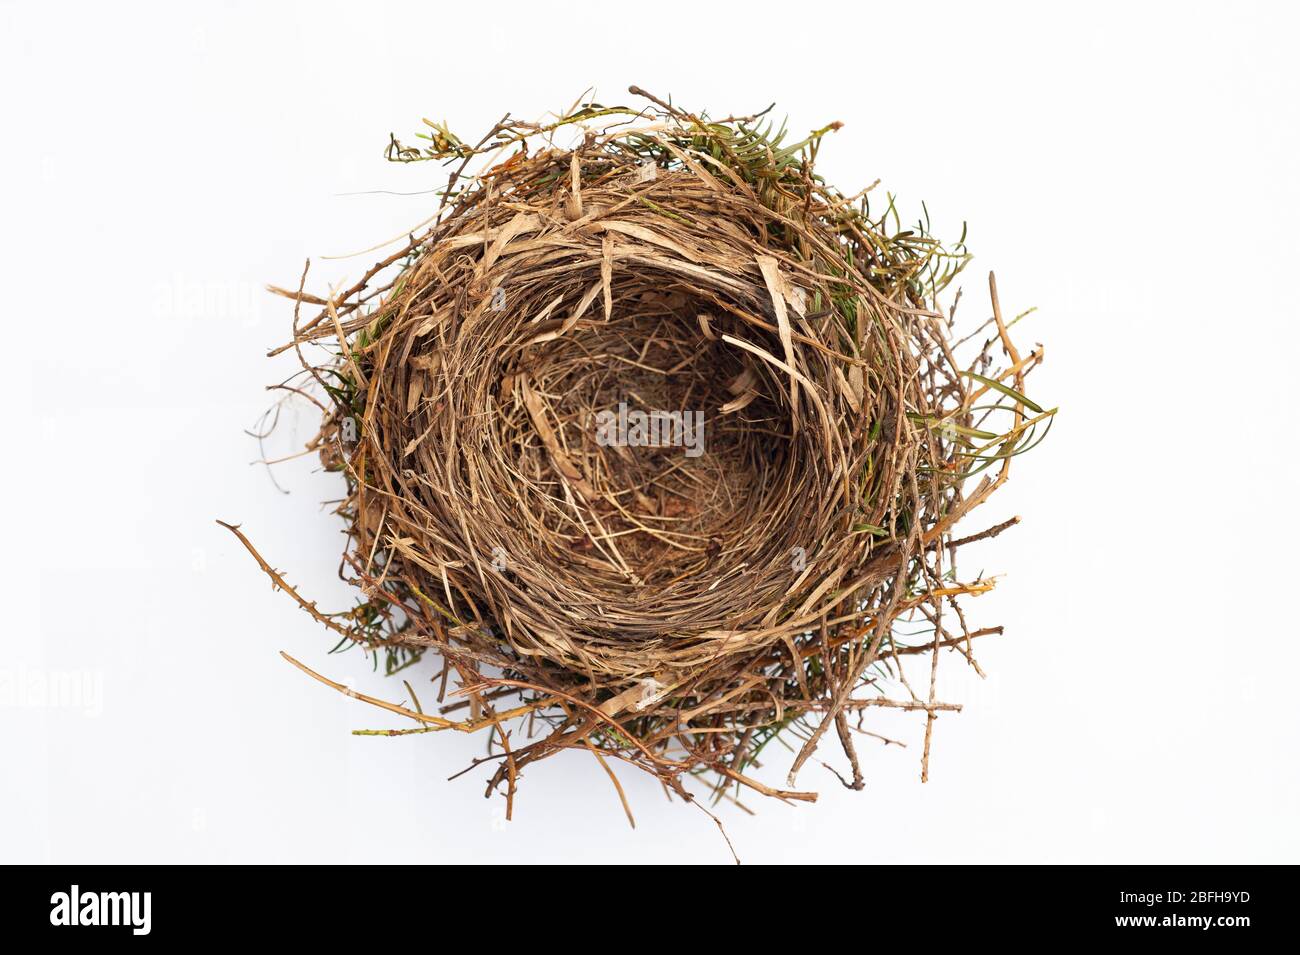 European Blackbird Nest, Turdus merula, isolato su sfondo bianco, Londra, Regno Unito, Isole Britanniche Foto Stock